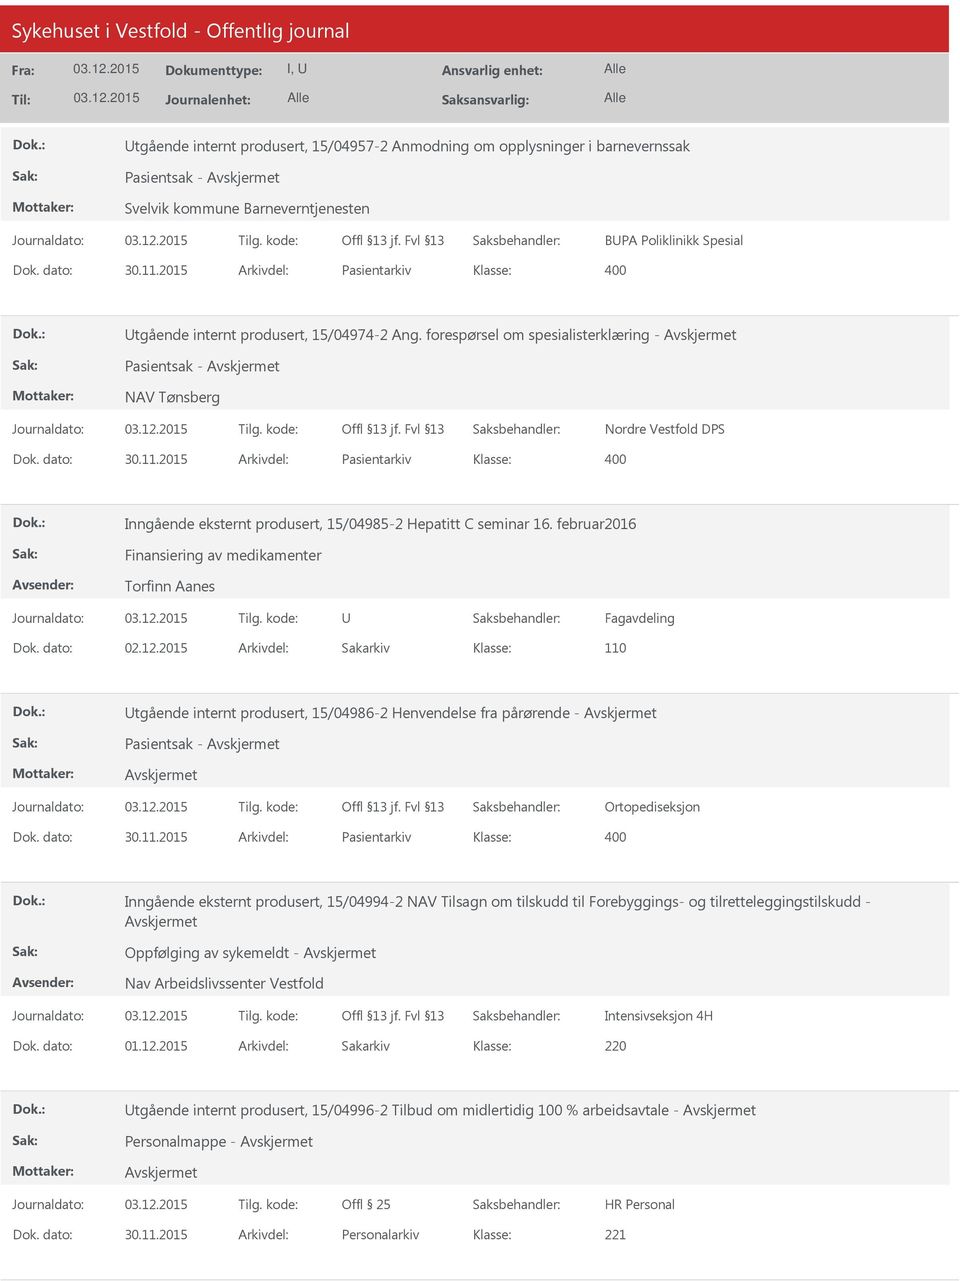 2015 Arkivdel: Pasientarkiv Inngående eksternt produsert, 15/04985-2 Hepatitt C seminar 16. februar2016 Finansiering av medikamenter Torfinn Aanes U Fagavdeling Dok. dato: 02.12.